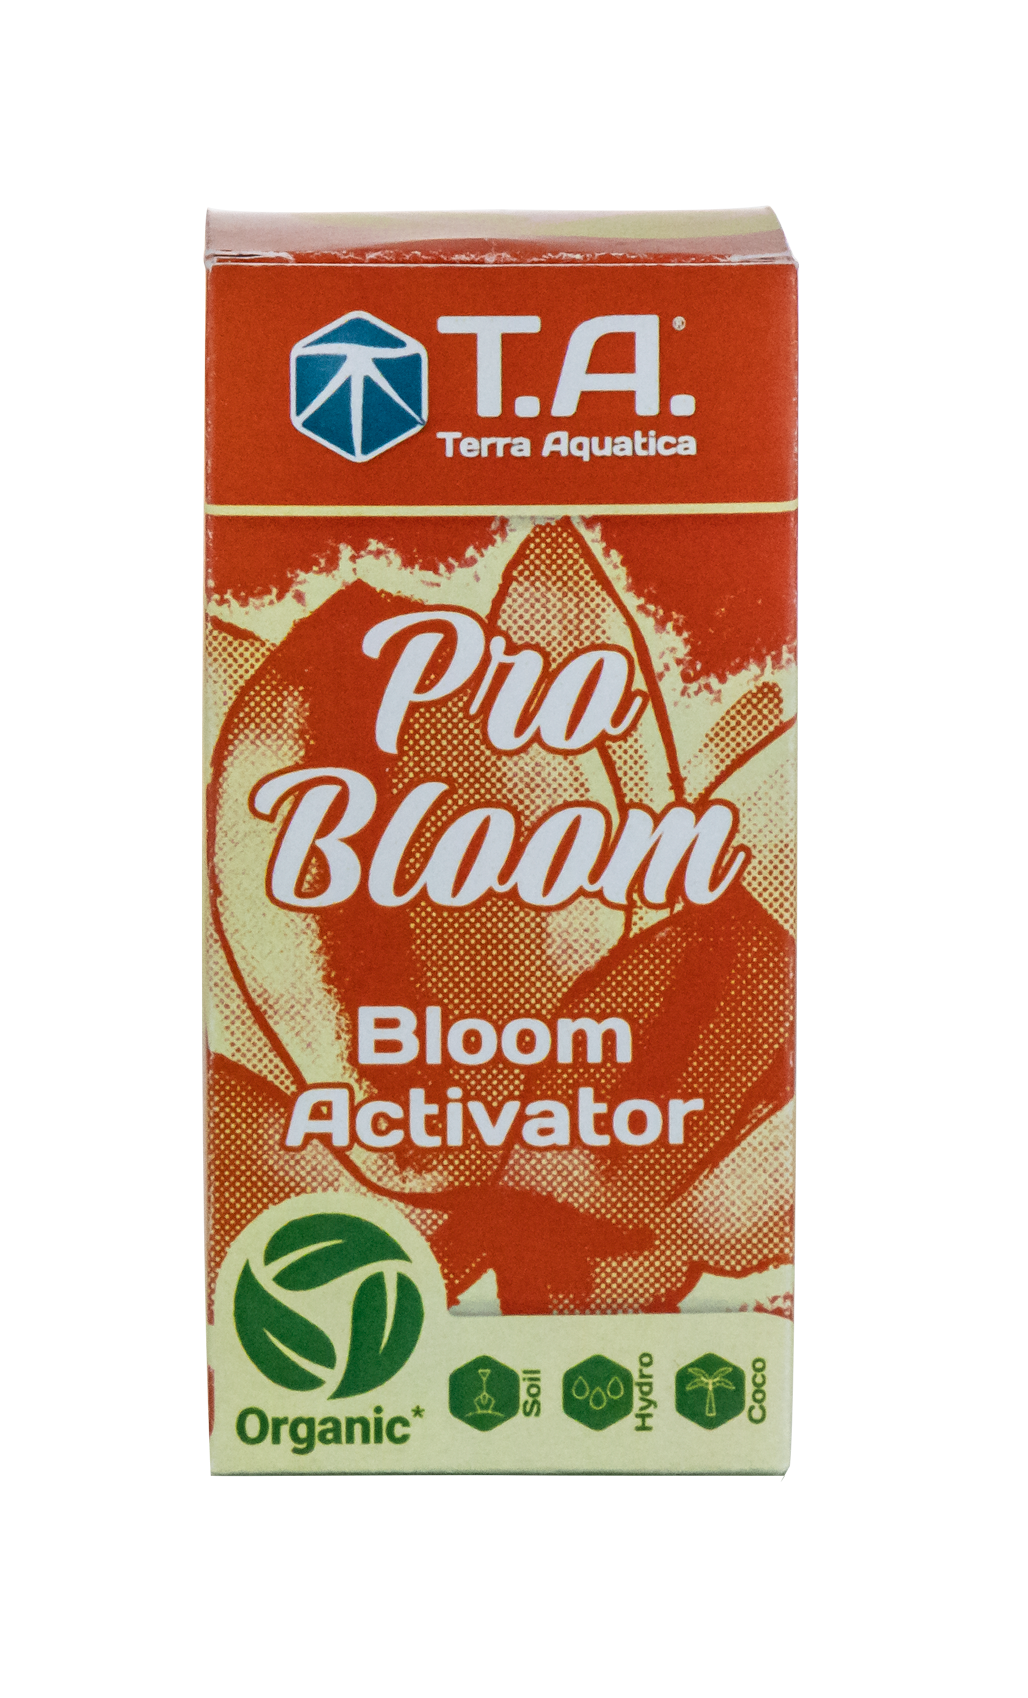 სიმწიფის აქტივატორი "Pro Bloom"